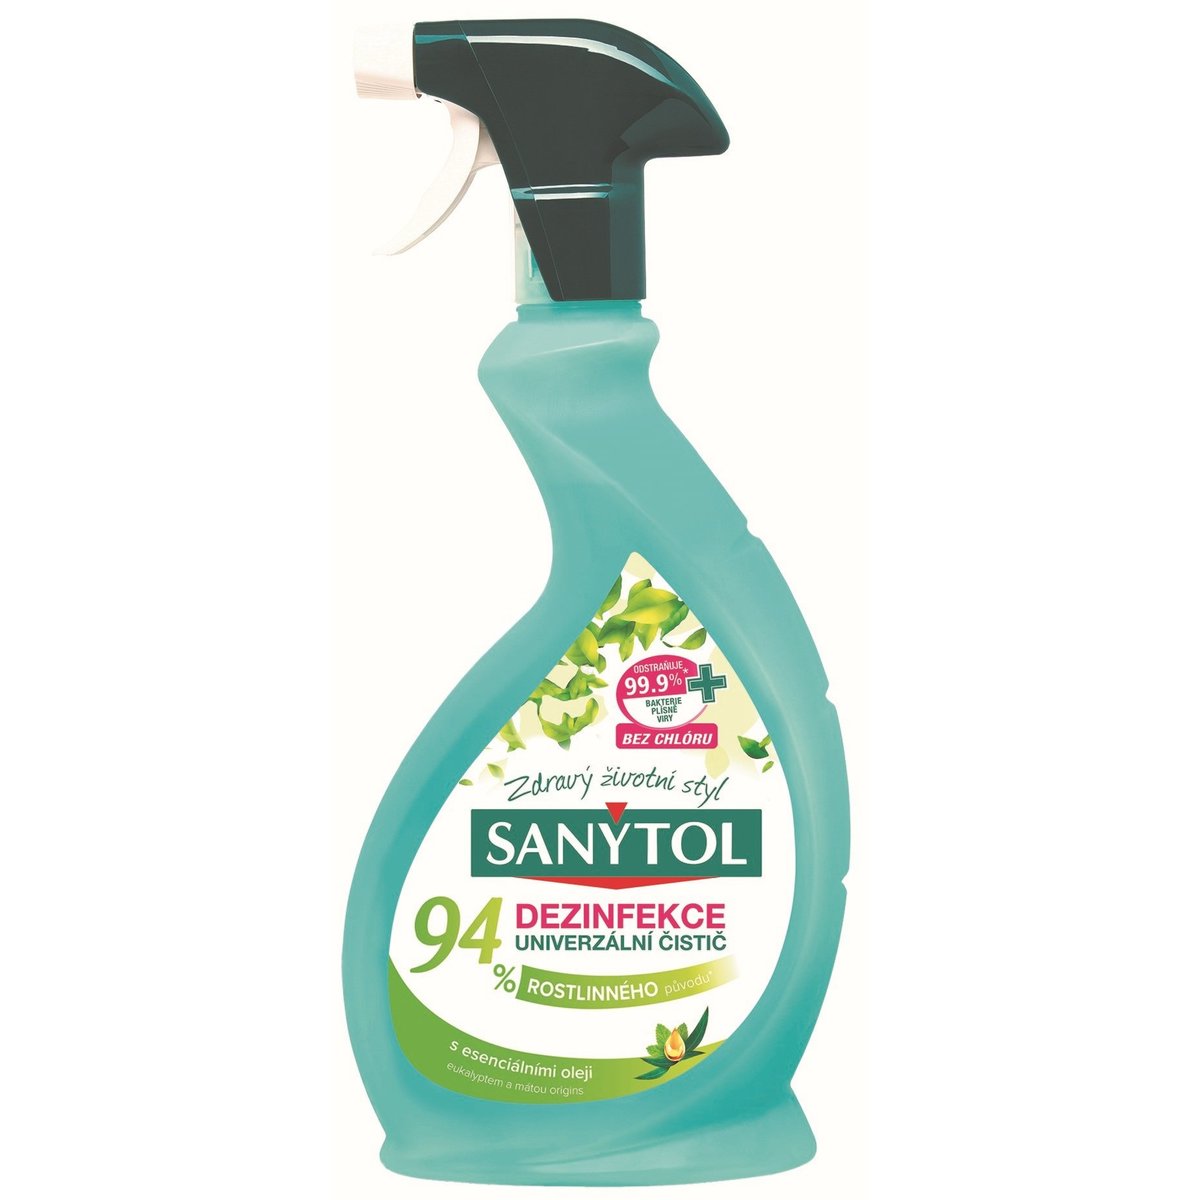 Sanytol Dezinfekční univerzální čistič ve spreji s 94 % rostlinného původu